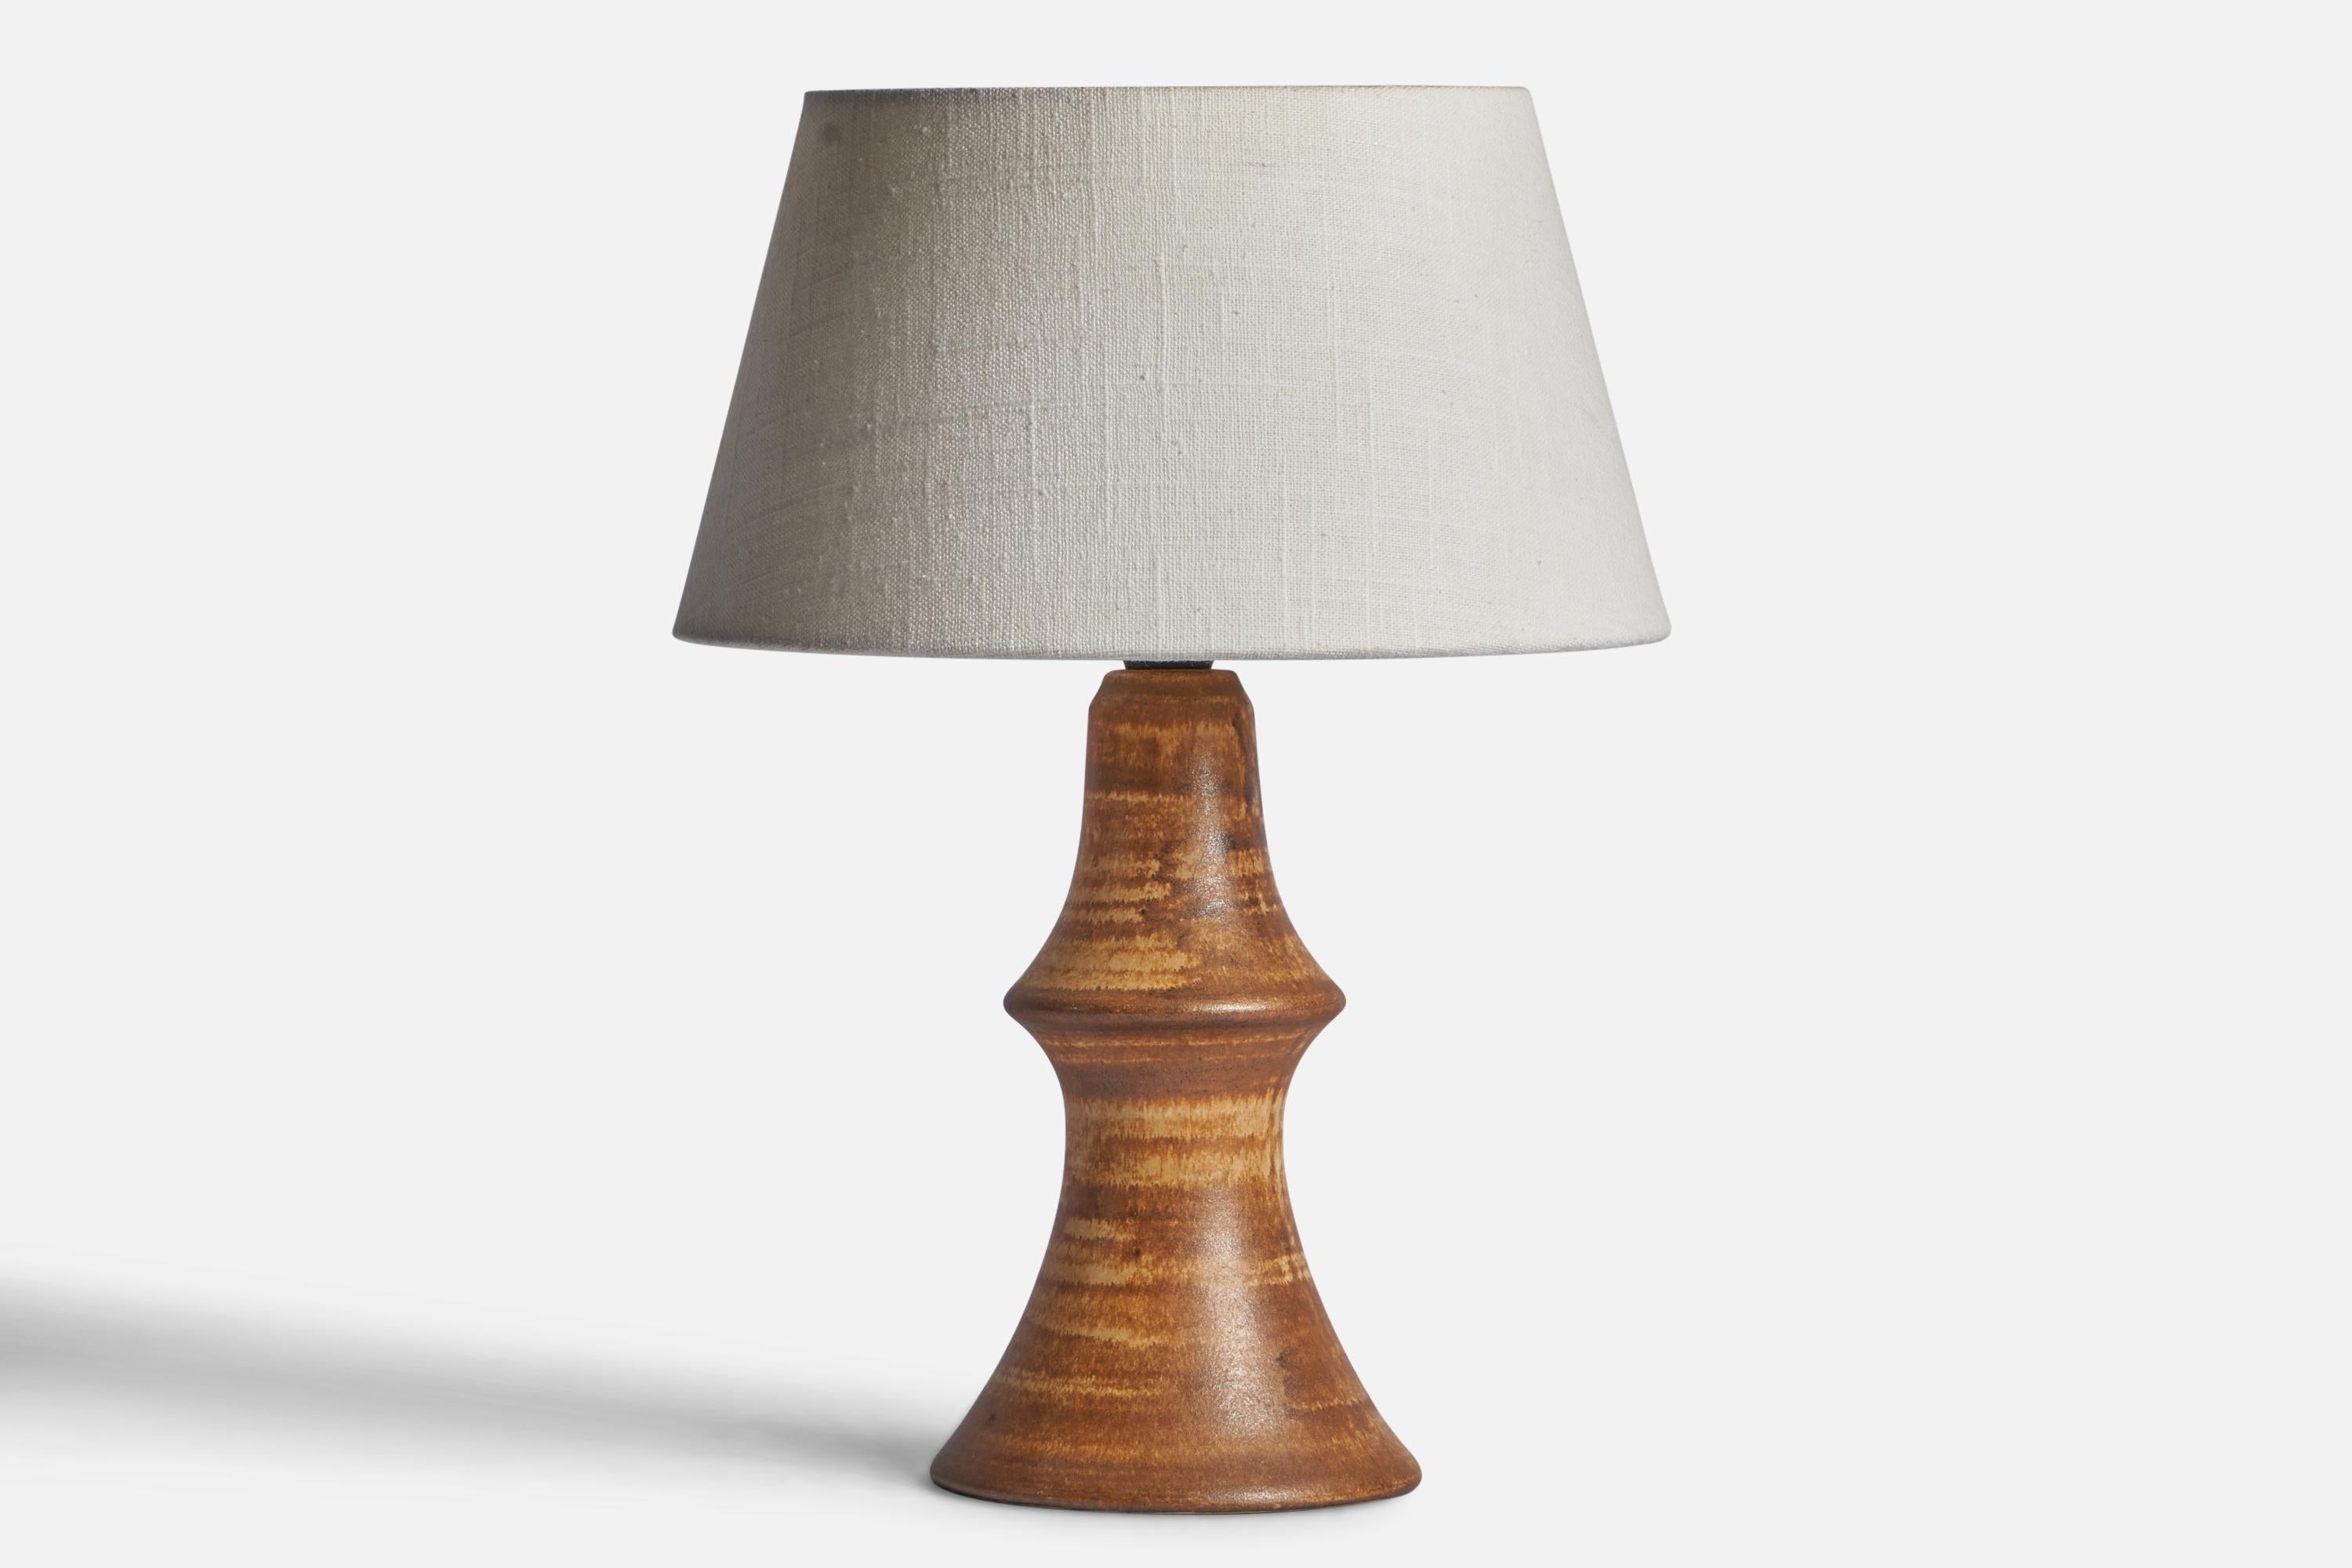 Lampe de table en grès émaillé brun, conçue par Bruno Karlsson et produite par Ego Stengods, Suède, C.I.C..

Dimensions de la lampe (pouces) : 11.1